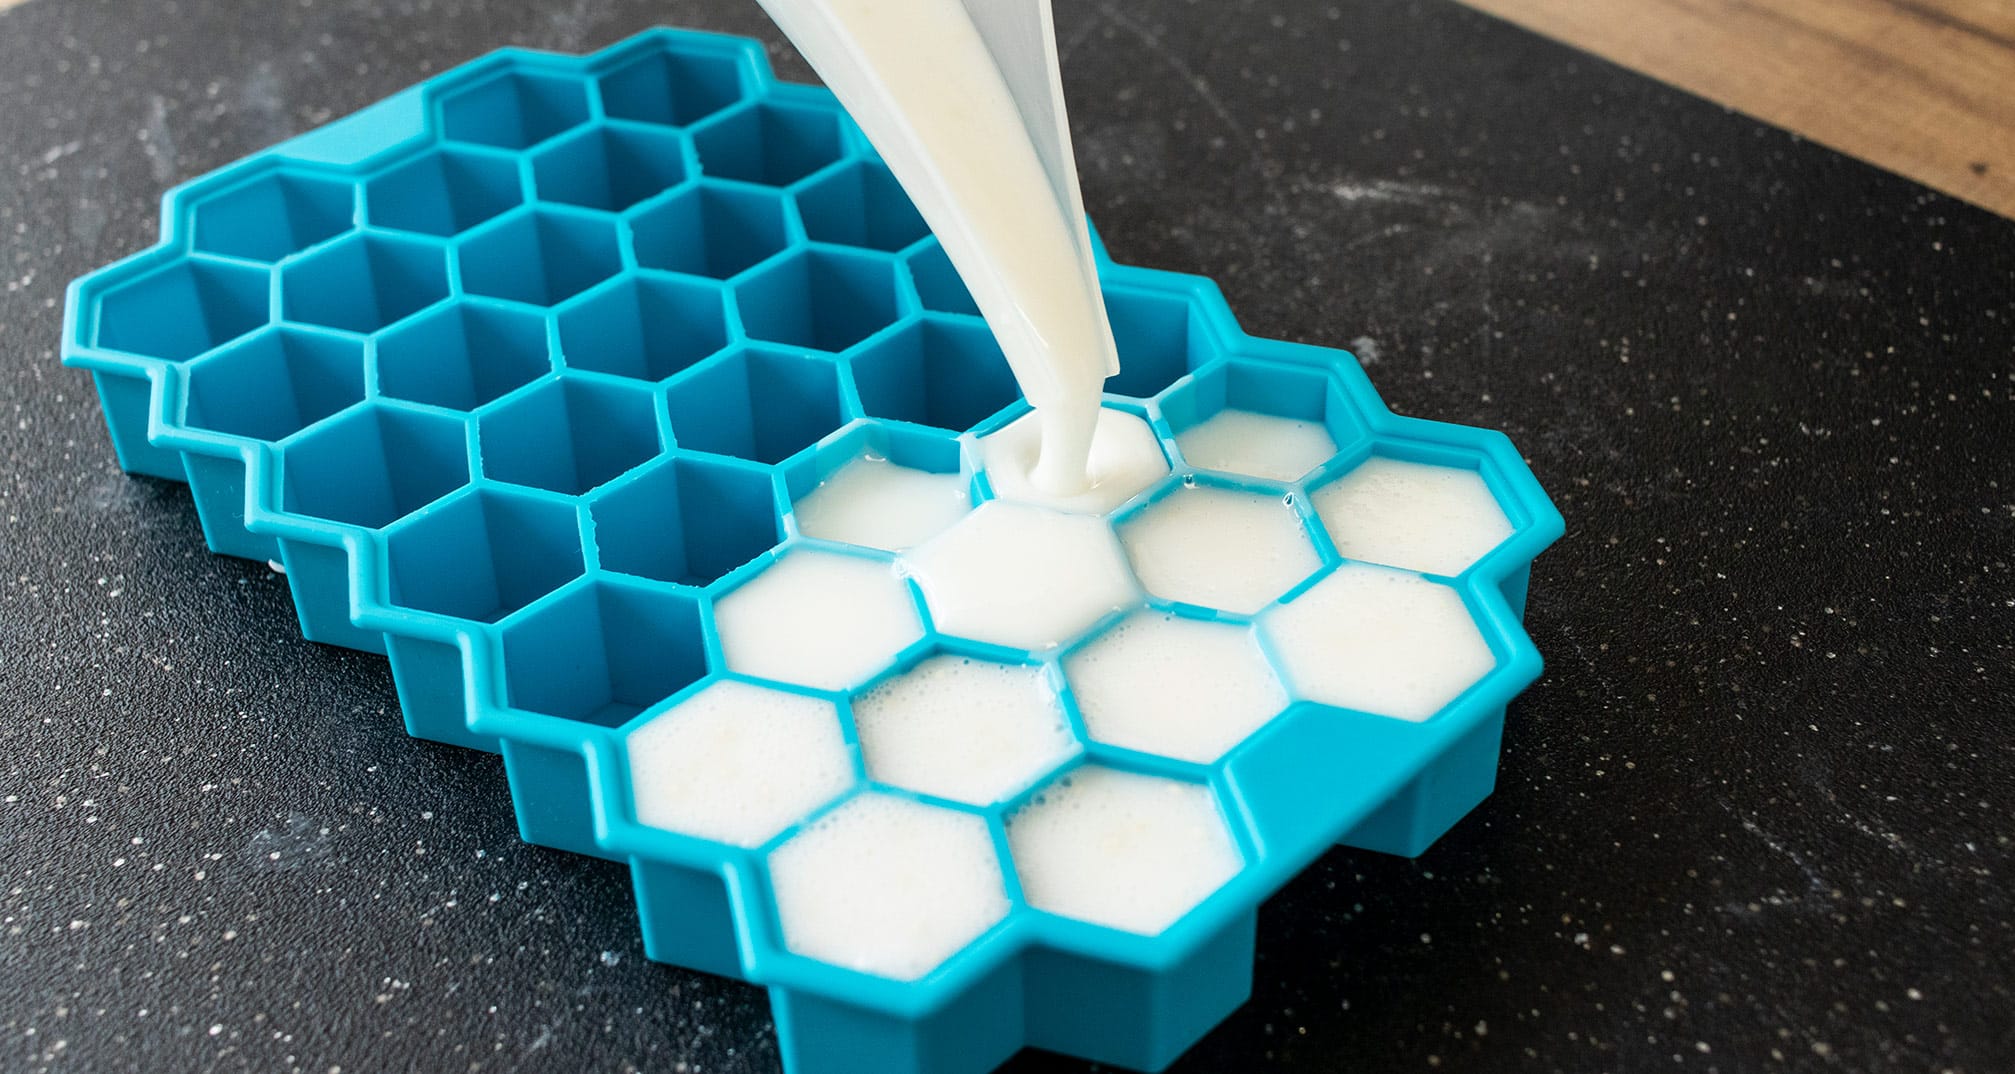 Pouring soap into a hexagon silicone soap mold